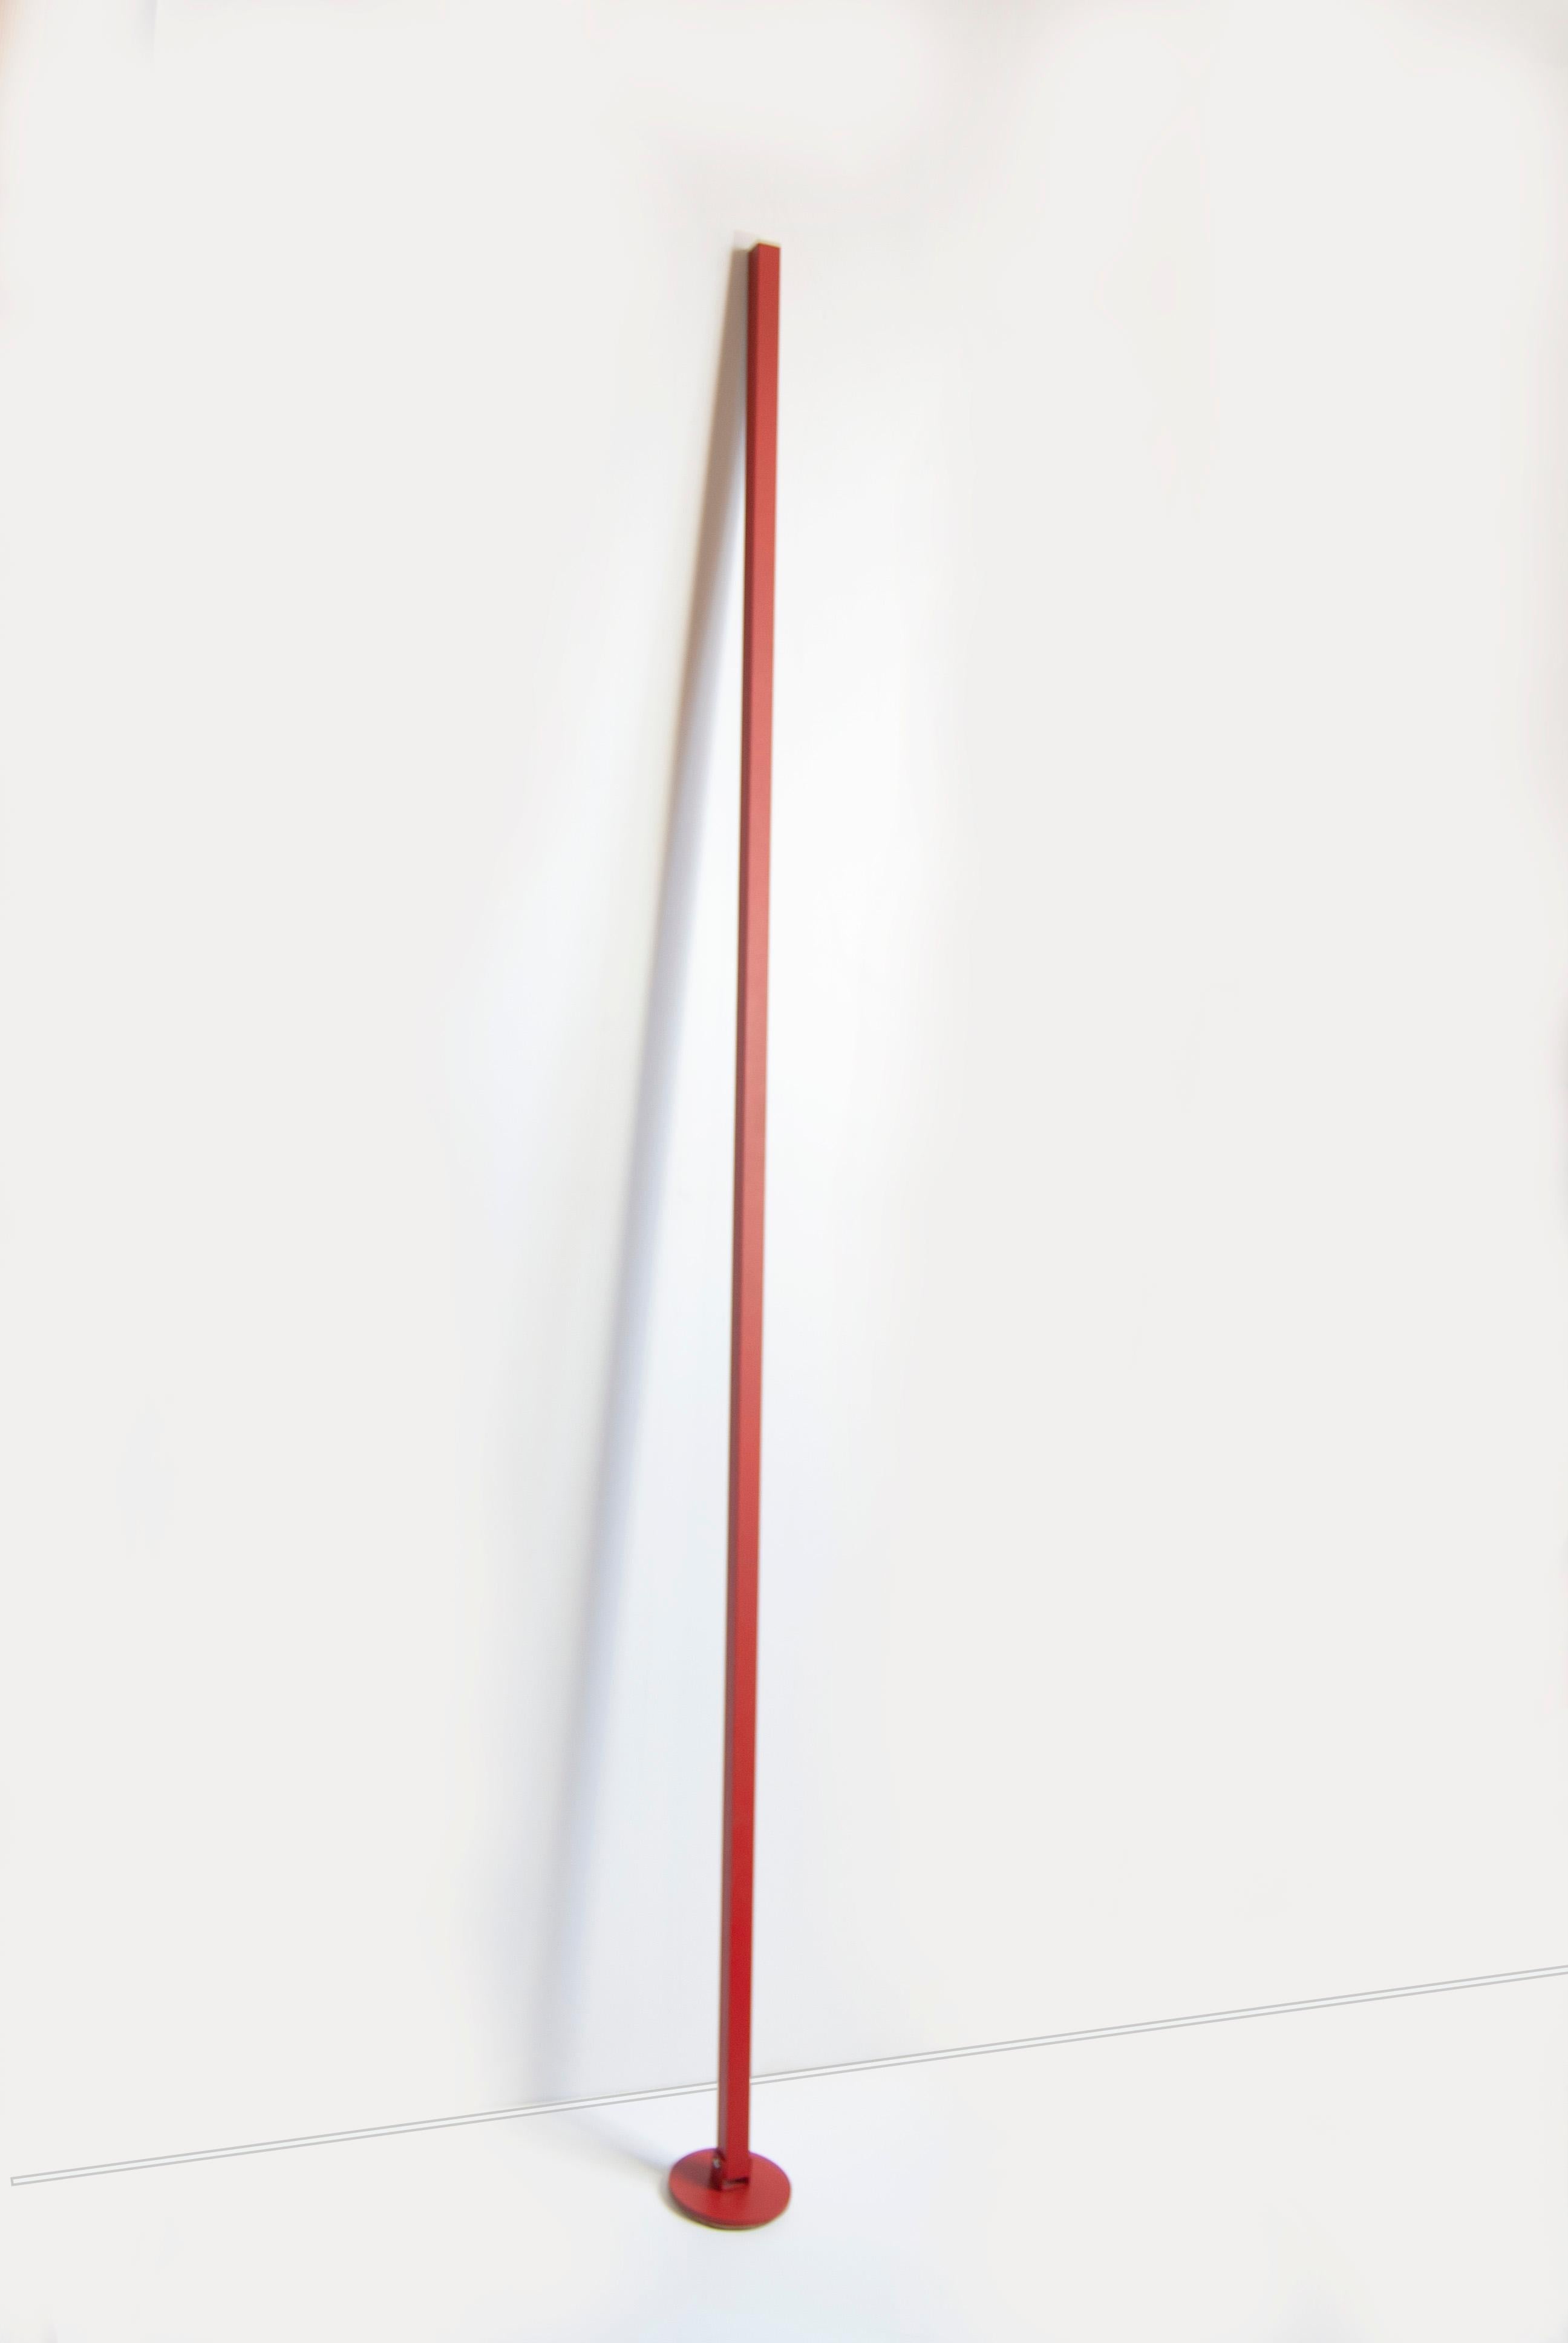 Gica Contra est un lampadaire conçu par Tommaso Cristofaro et dédié à son fils Riccardo, fabriqué en série limitée avec une méthode hautement artisanale.
Pour la réalisation, on utilise des matériaux tels que l'aluminium de 1,5 mm d'épaisseur qui,